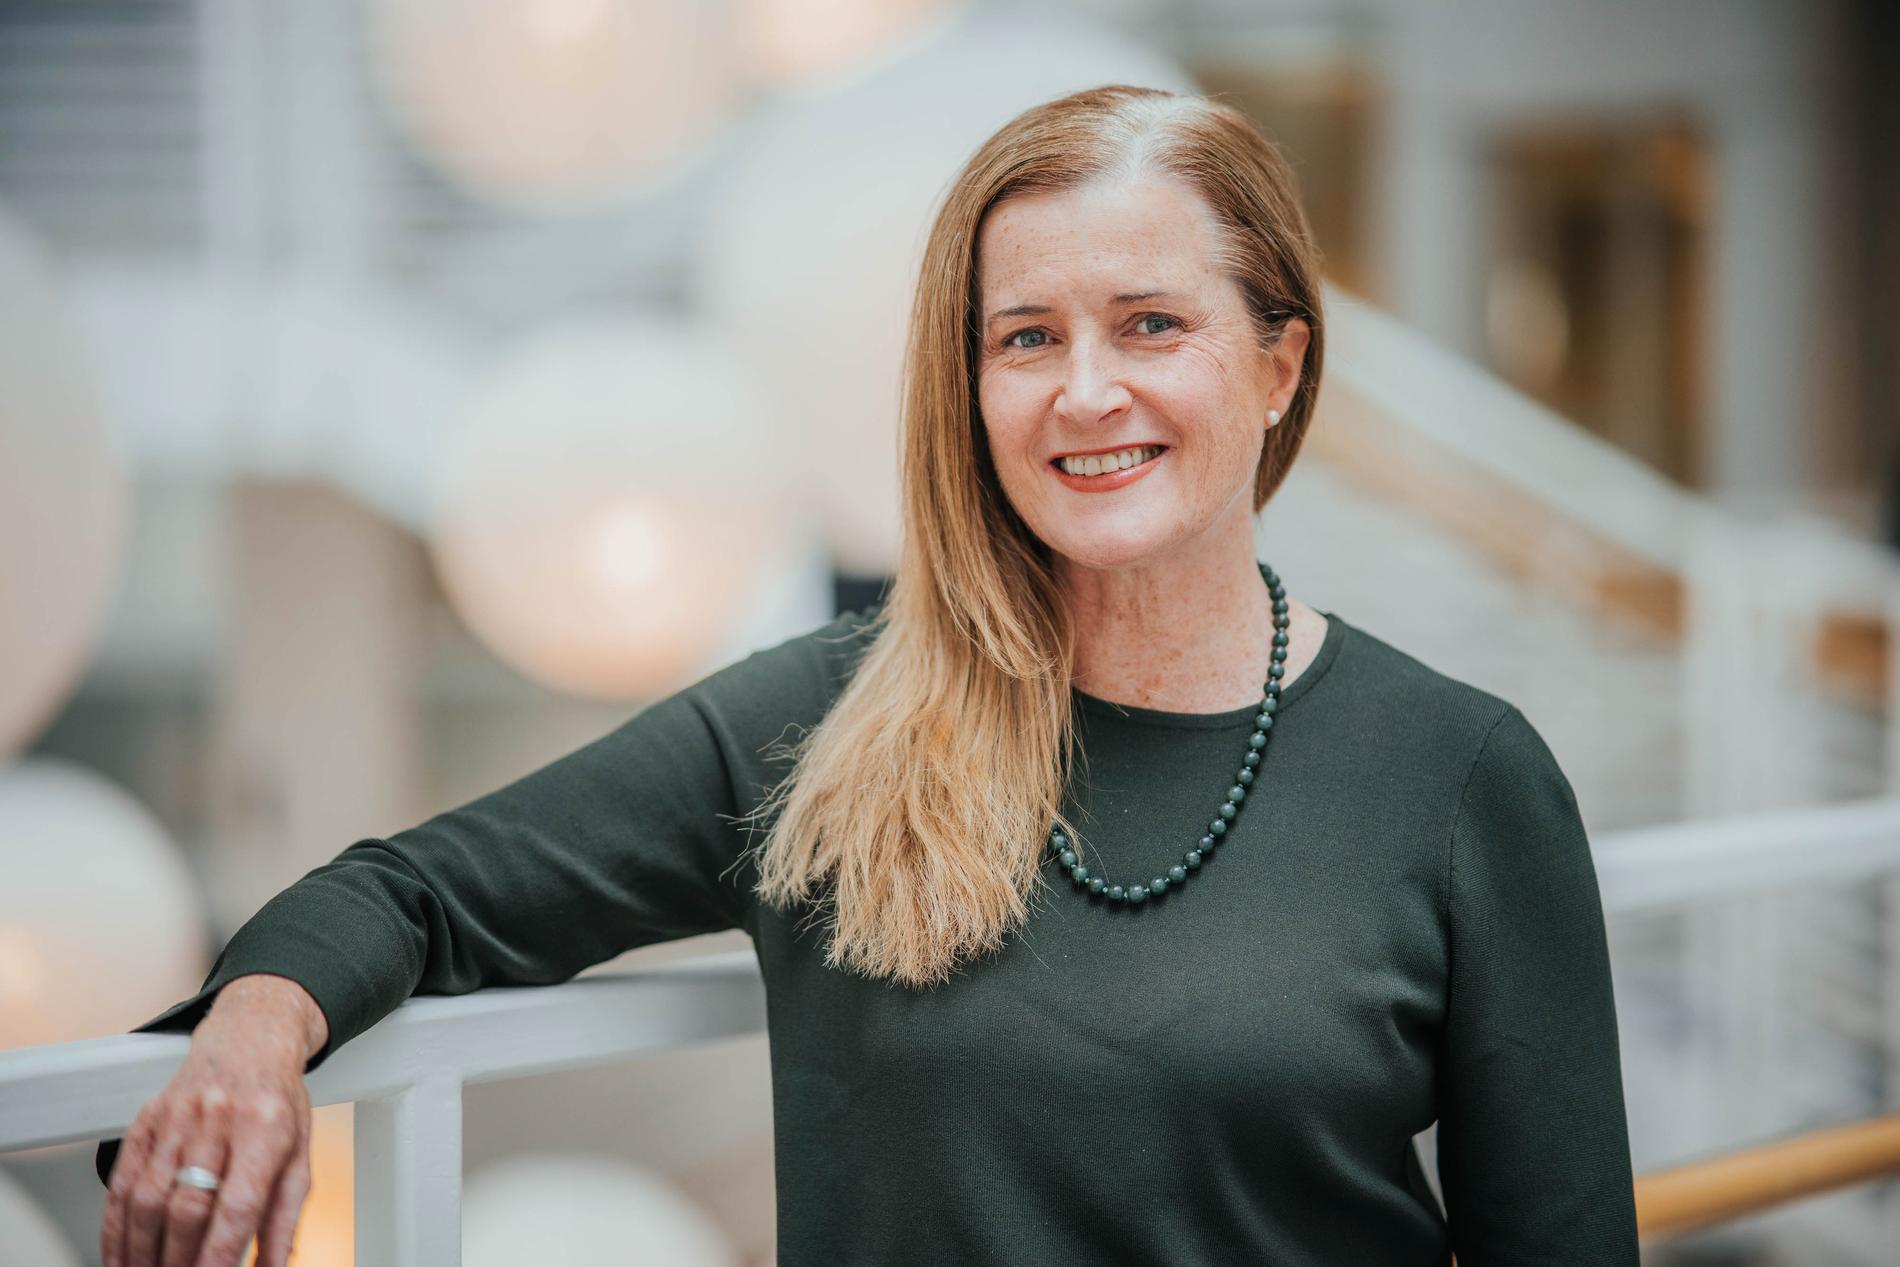 STOR ENDRING: – Markedsføringsfaget endrer seg fort, sier høyskolelektor Annette Kallevig ved Høyskolen Kristiania